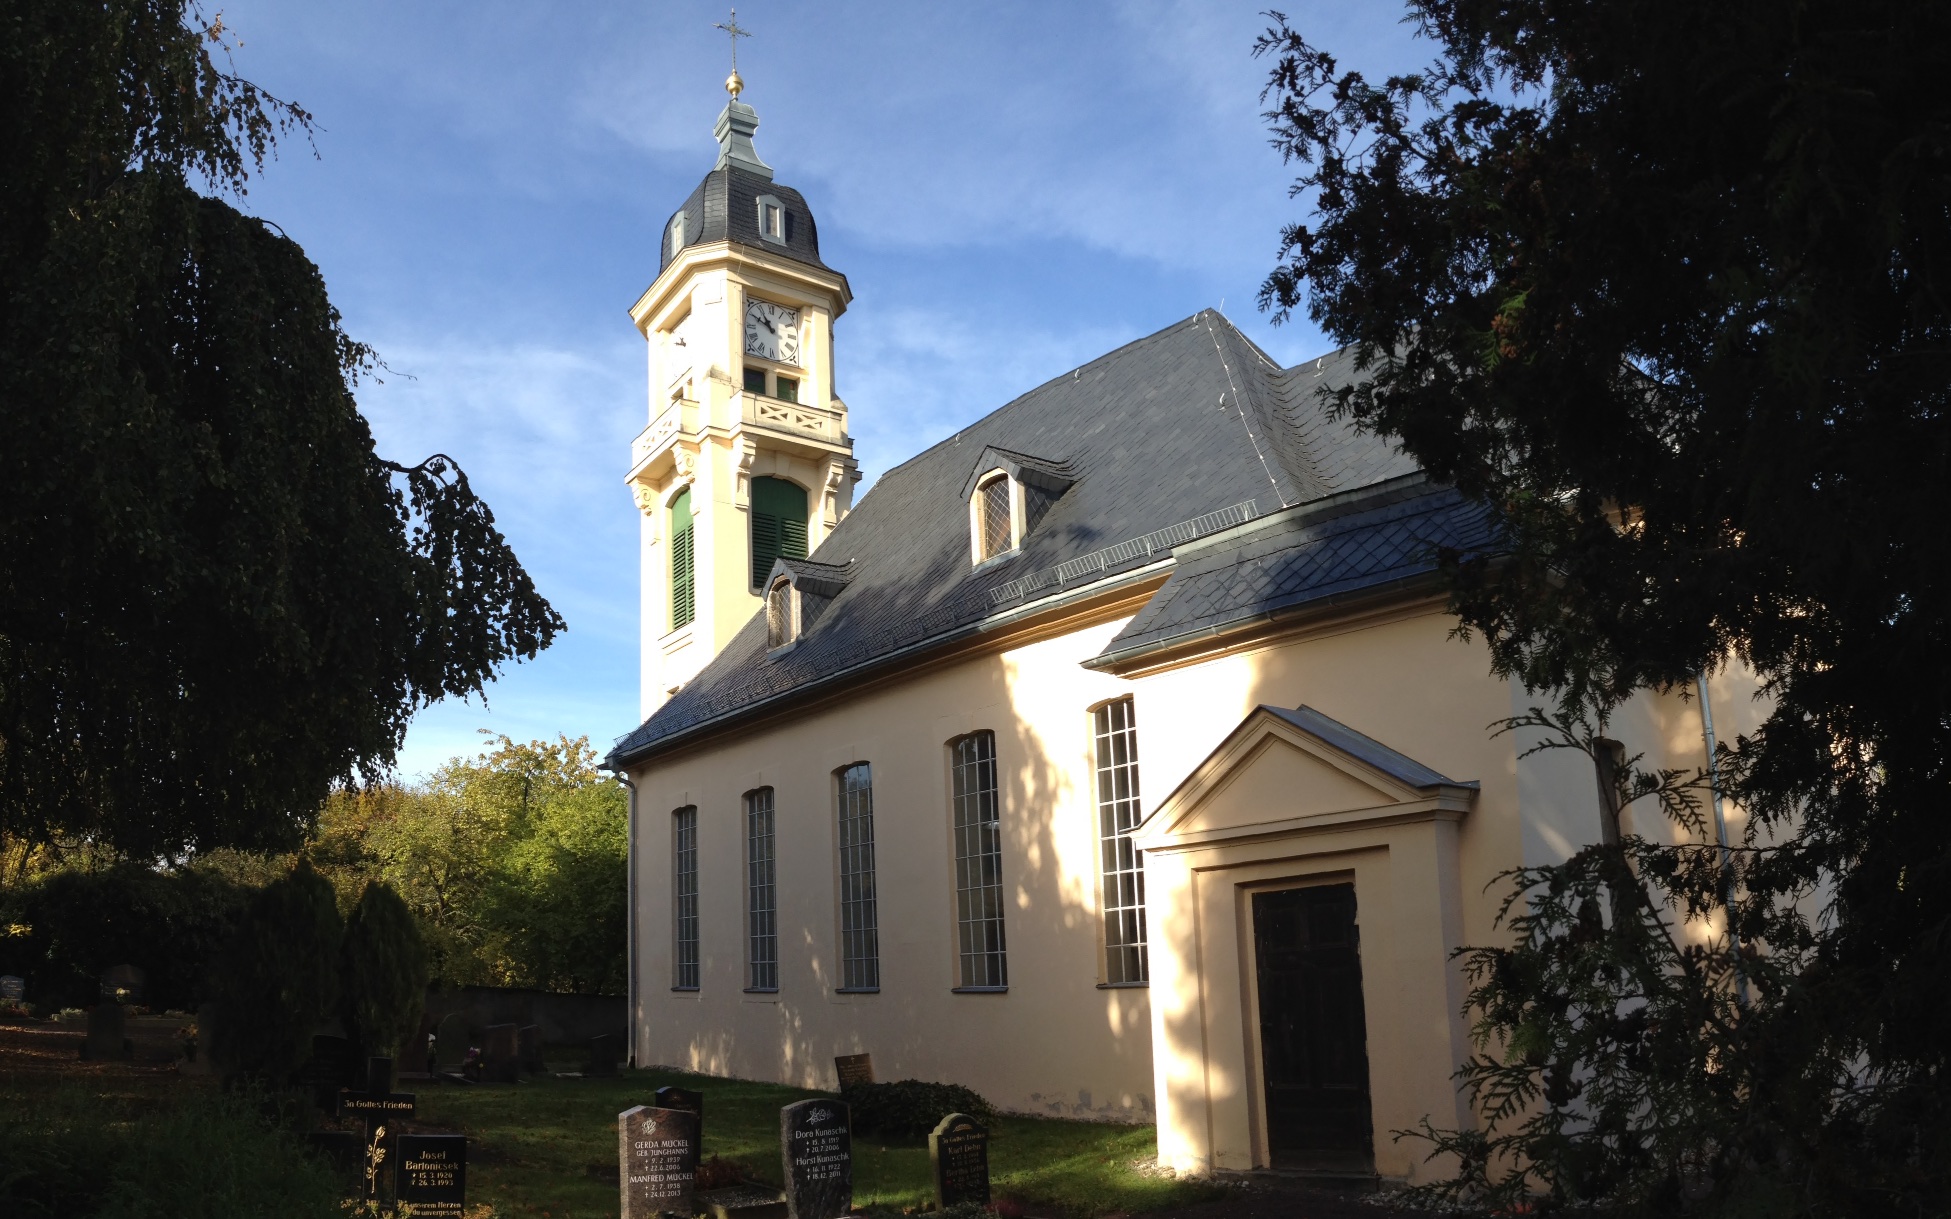 1778 wurde die heutige Limbacher Kirche errichtet.